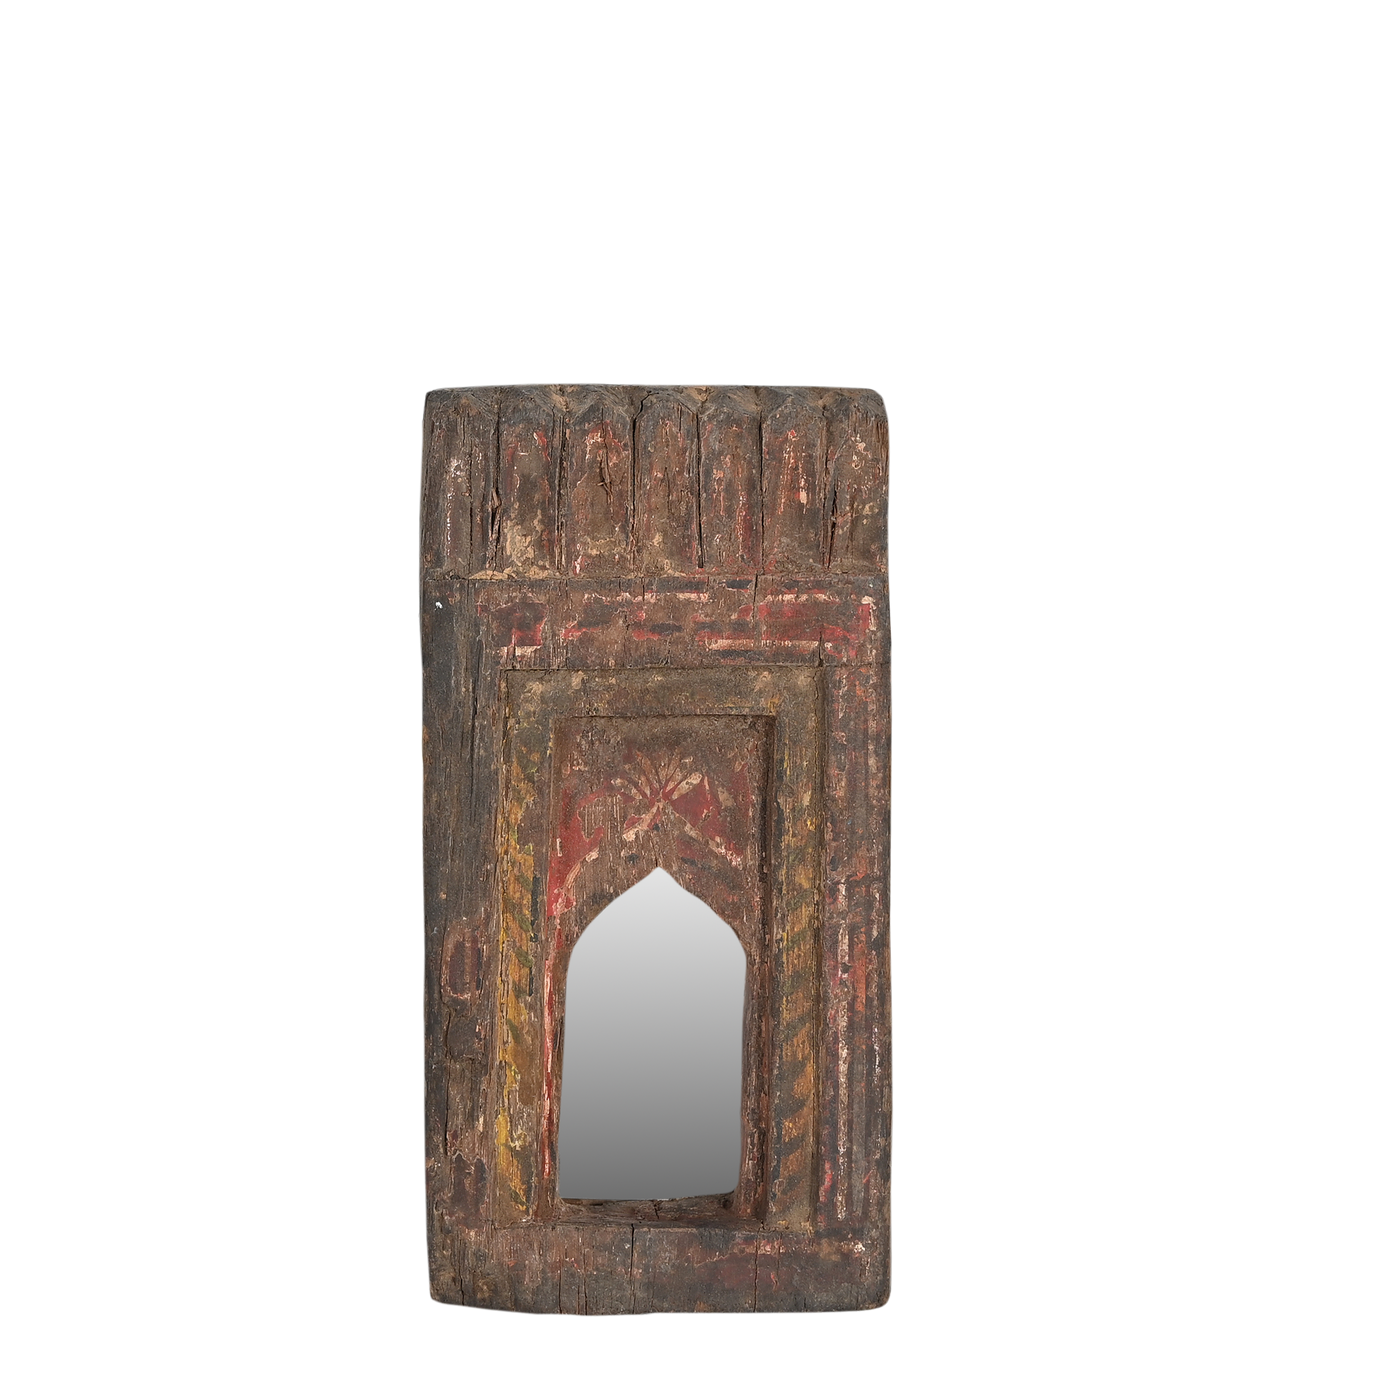 Mandir - Temple mirror n ° 34